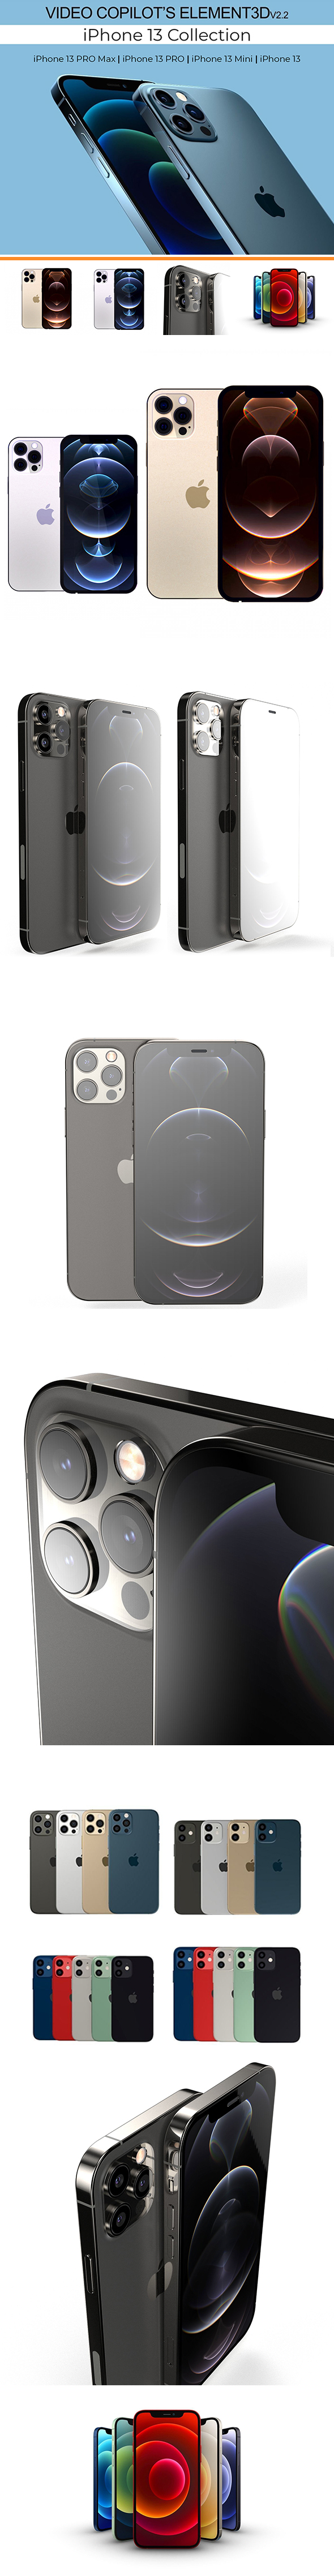 iPhone 13 Concept - 3Docean 33625207